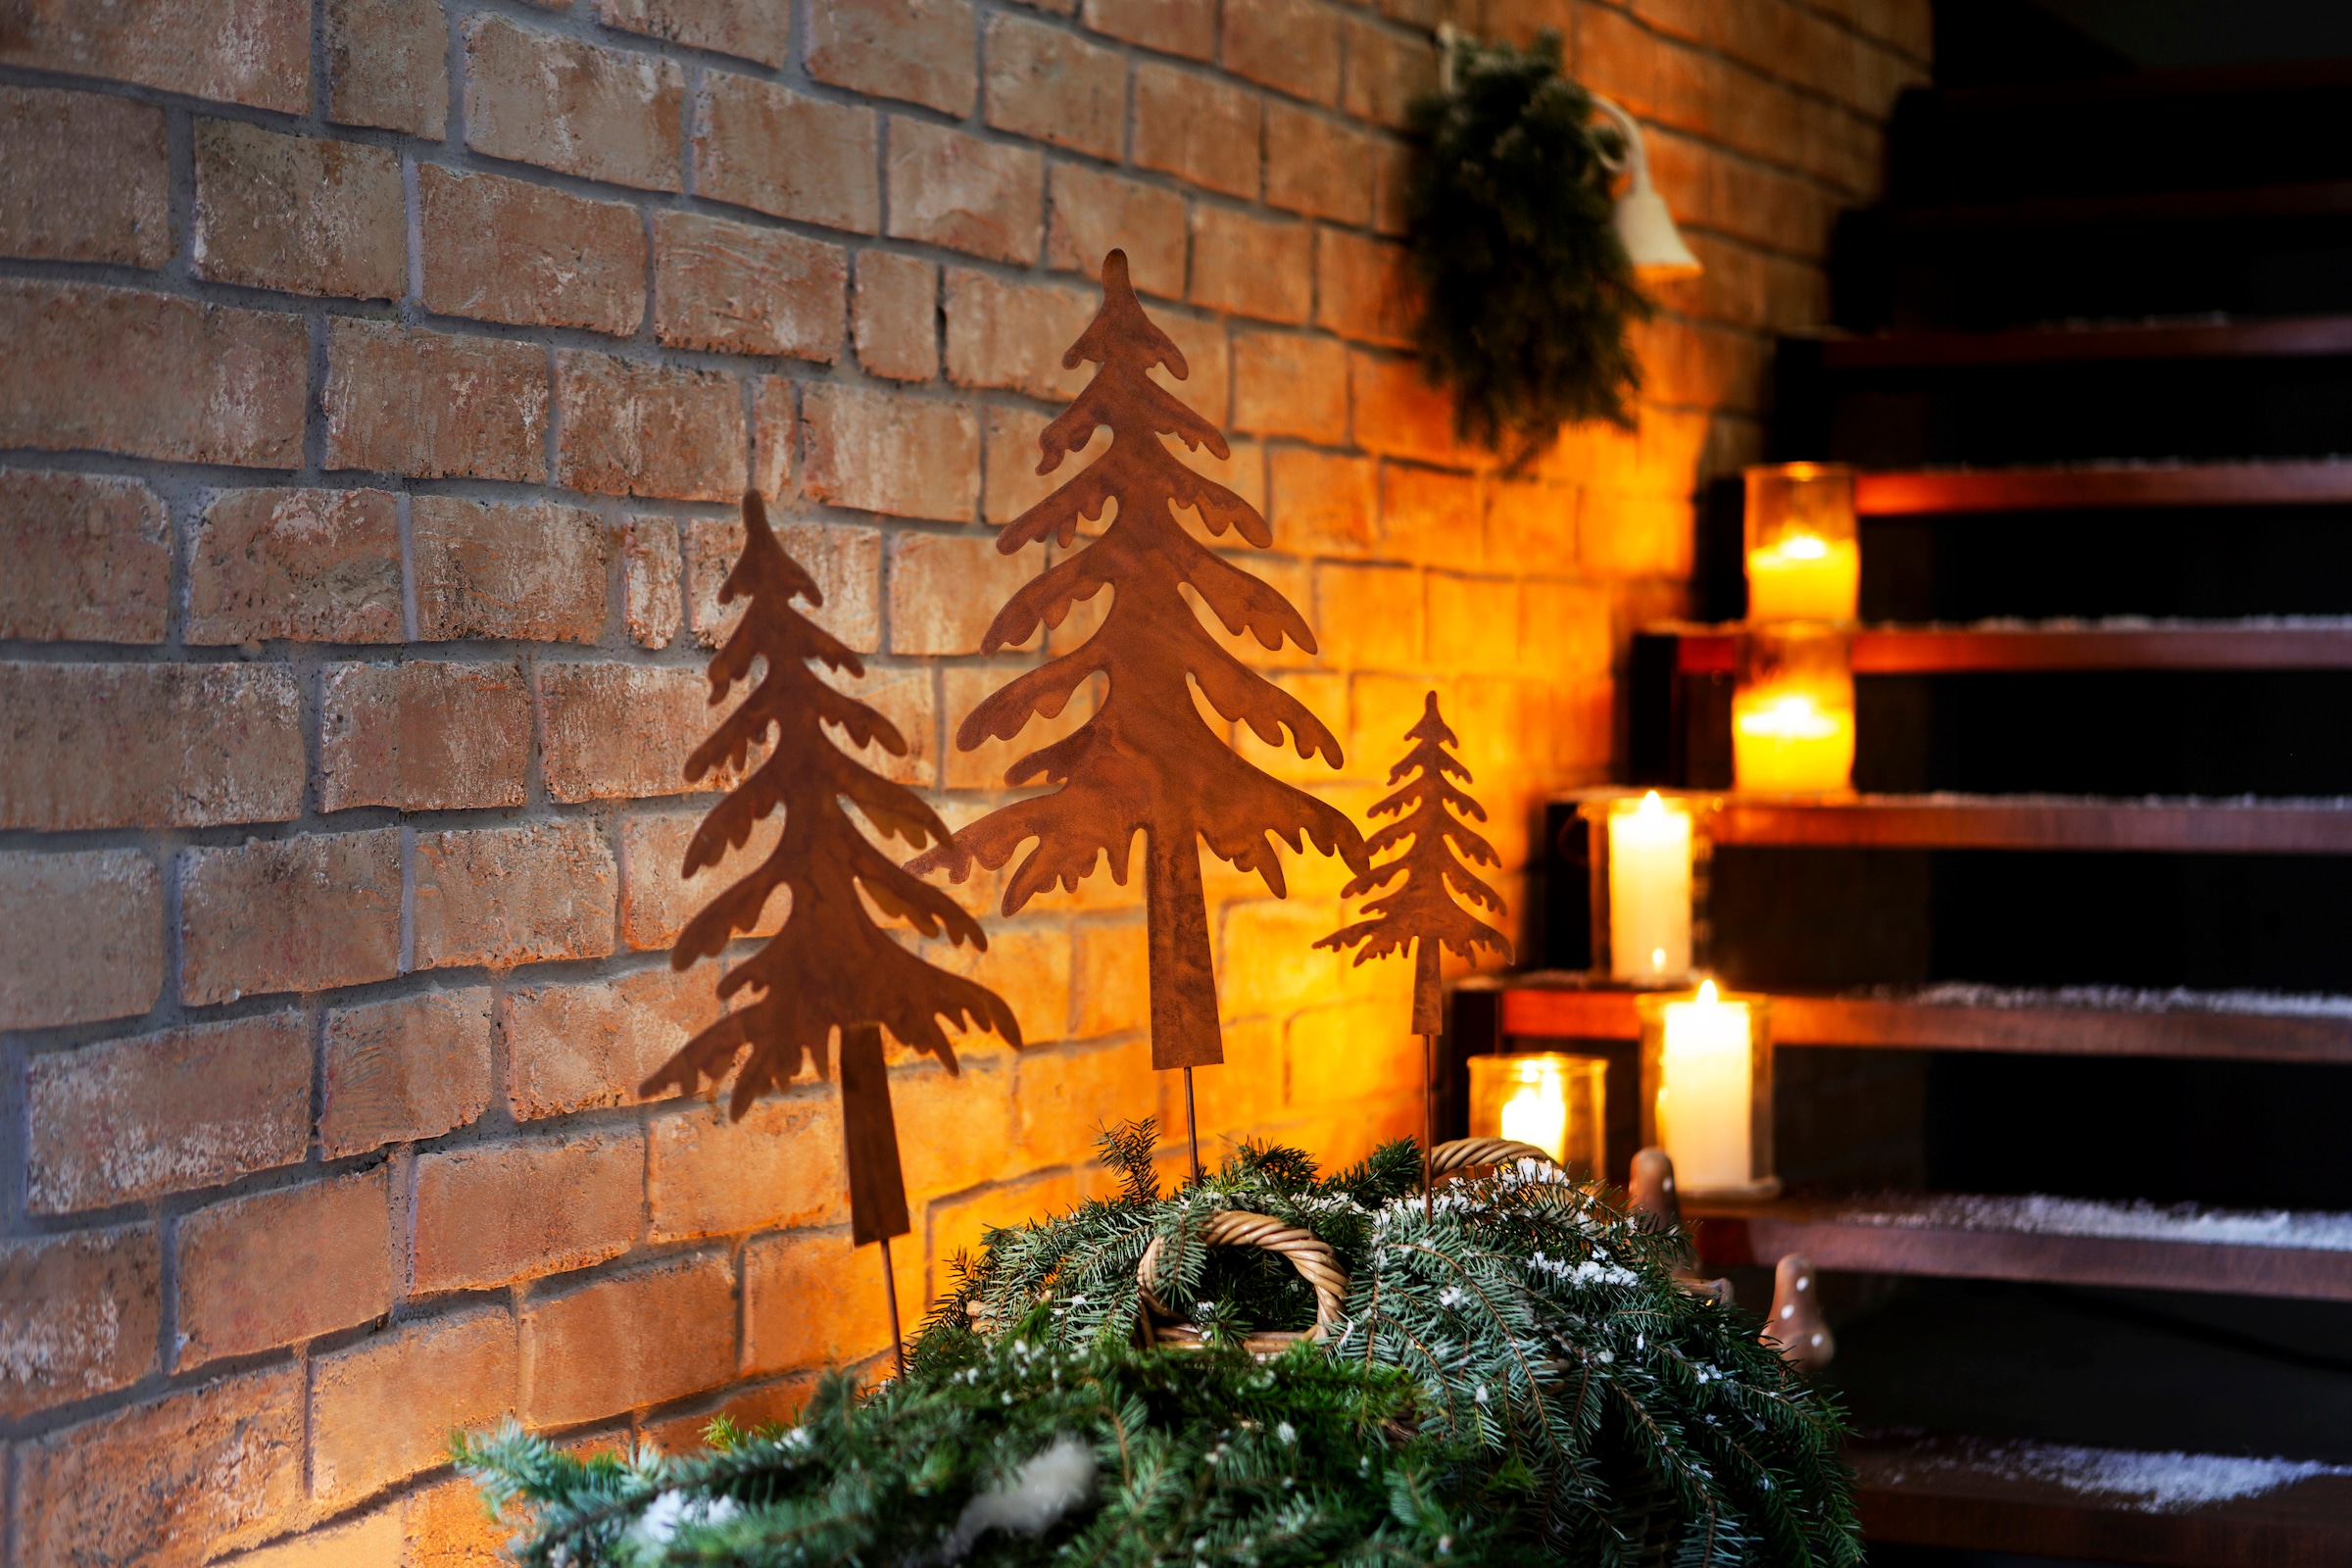 my home Dekobaum »Tannenbaum, Weihnachtsdeko aussen«, Gartenstecker in Rostoptik, Höhe ca. 50 cm + 70 cm + 90 cm